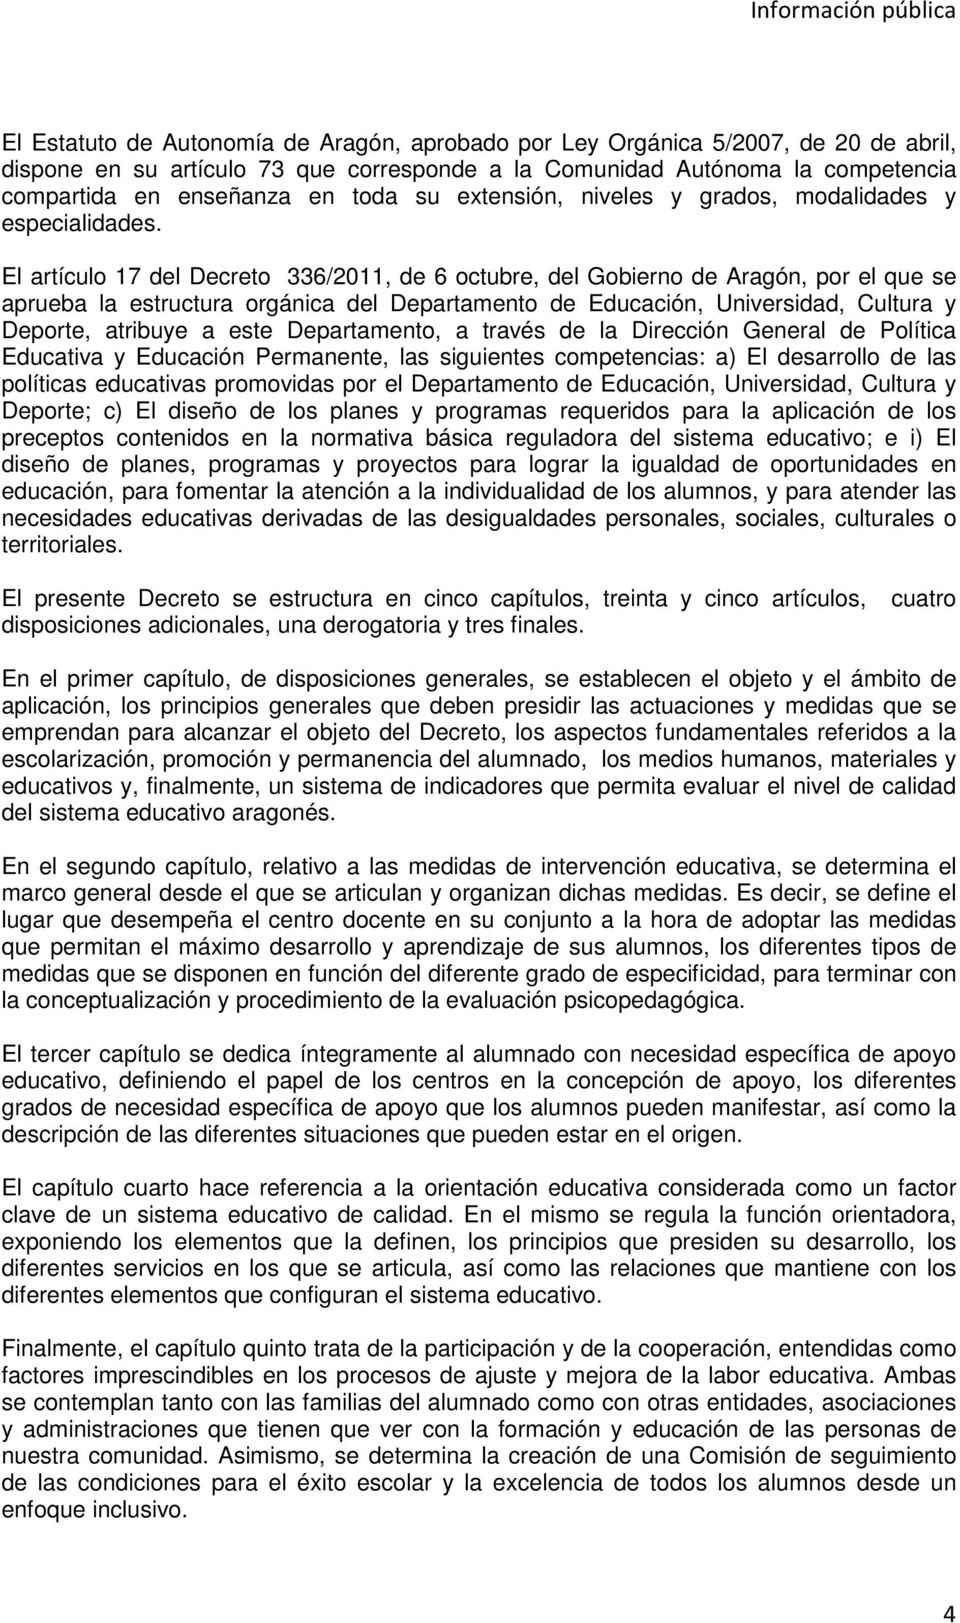 El artículo 17 del Decreto 336/2011, de 6 octubre, del Gobierno de Aragón, por el que se aprueba la estructura orgánica del Departamento de Educación, Universidad, Cultura y Deporte, atribuye a este